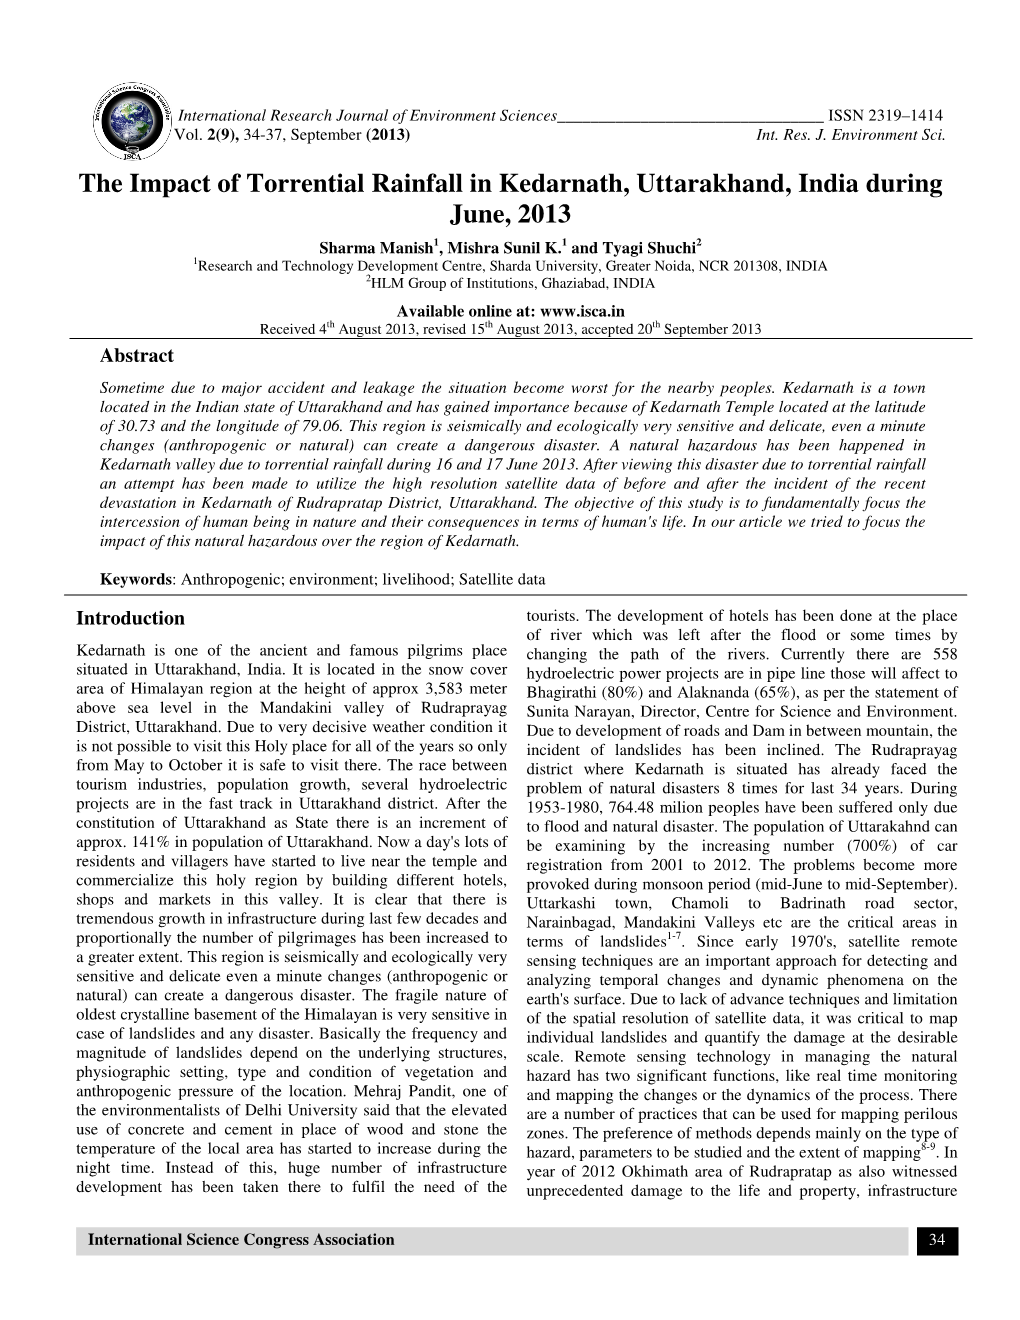 The Impact of Torrential Rainfall in Kedarnath, Uttarakhand, India During June, 2013